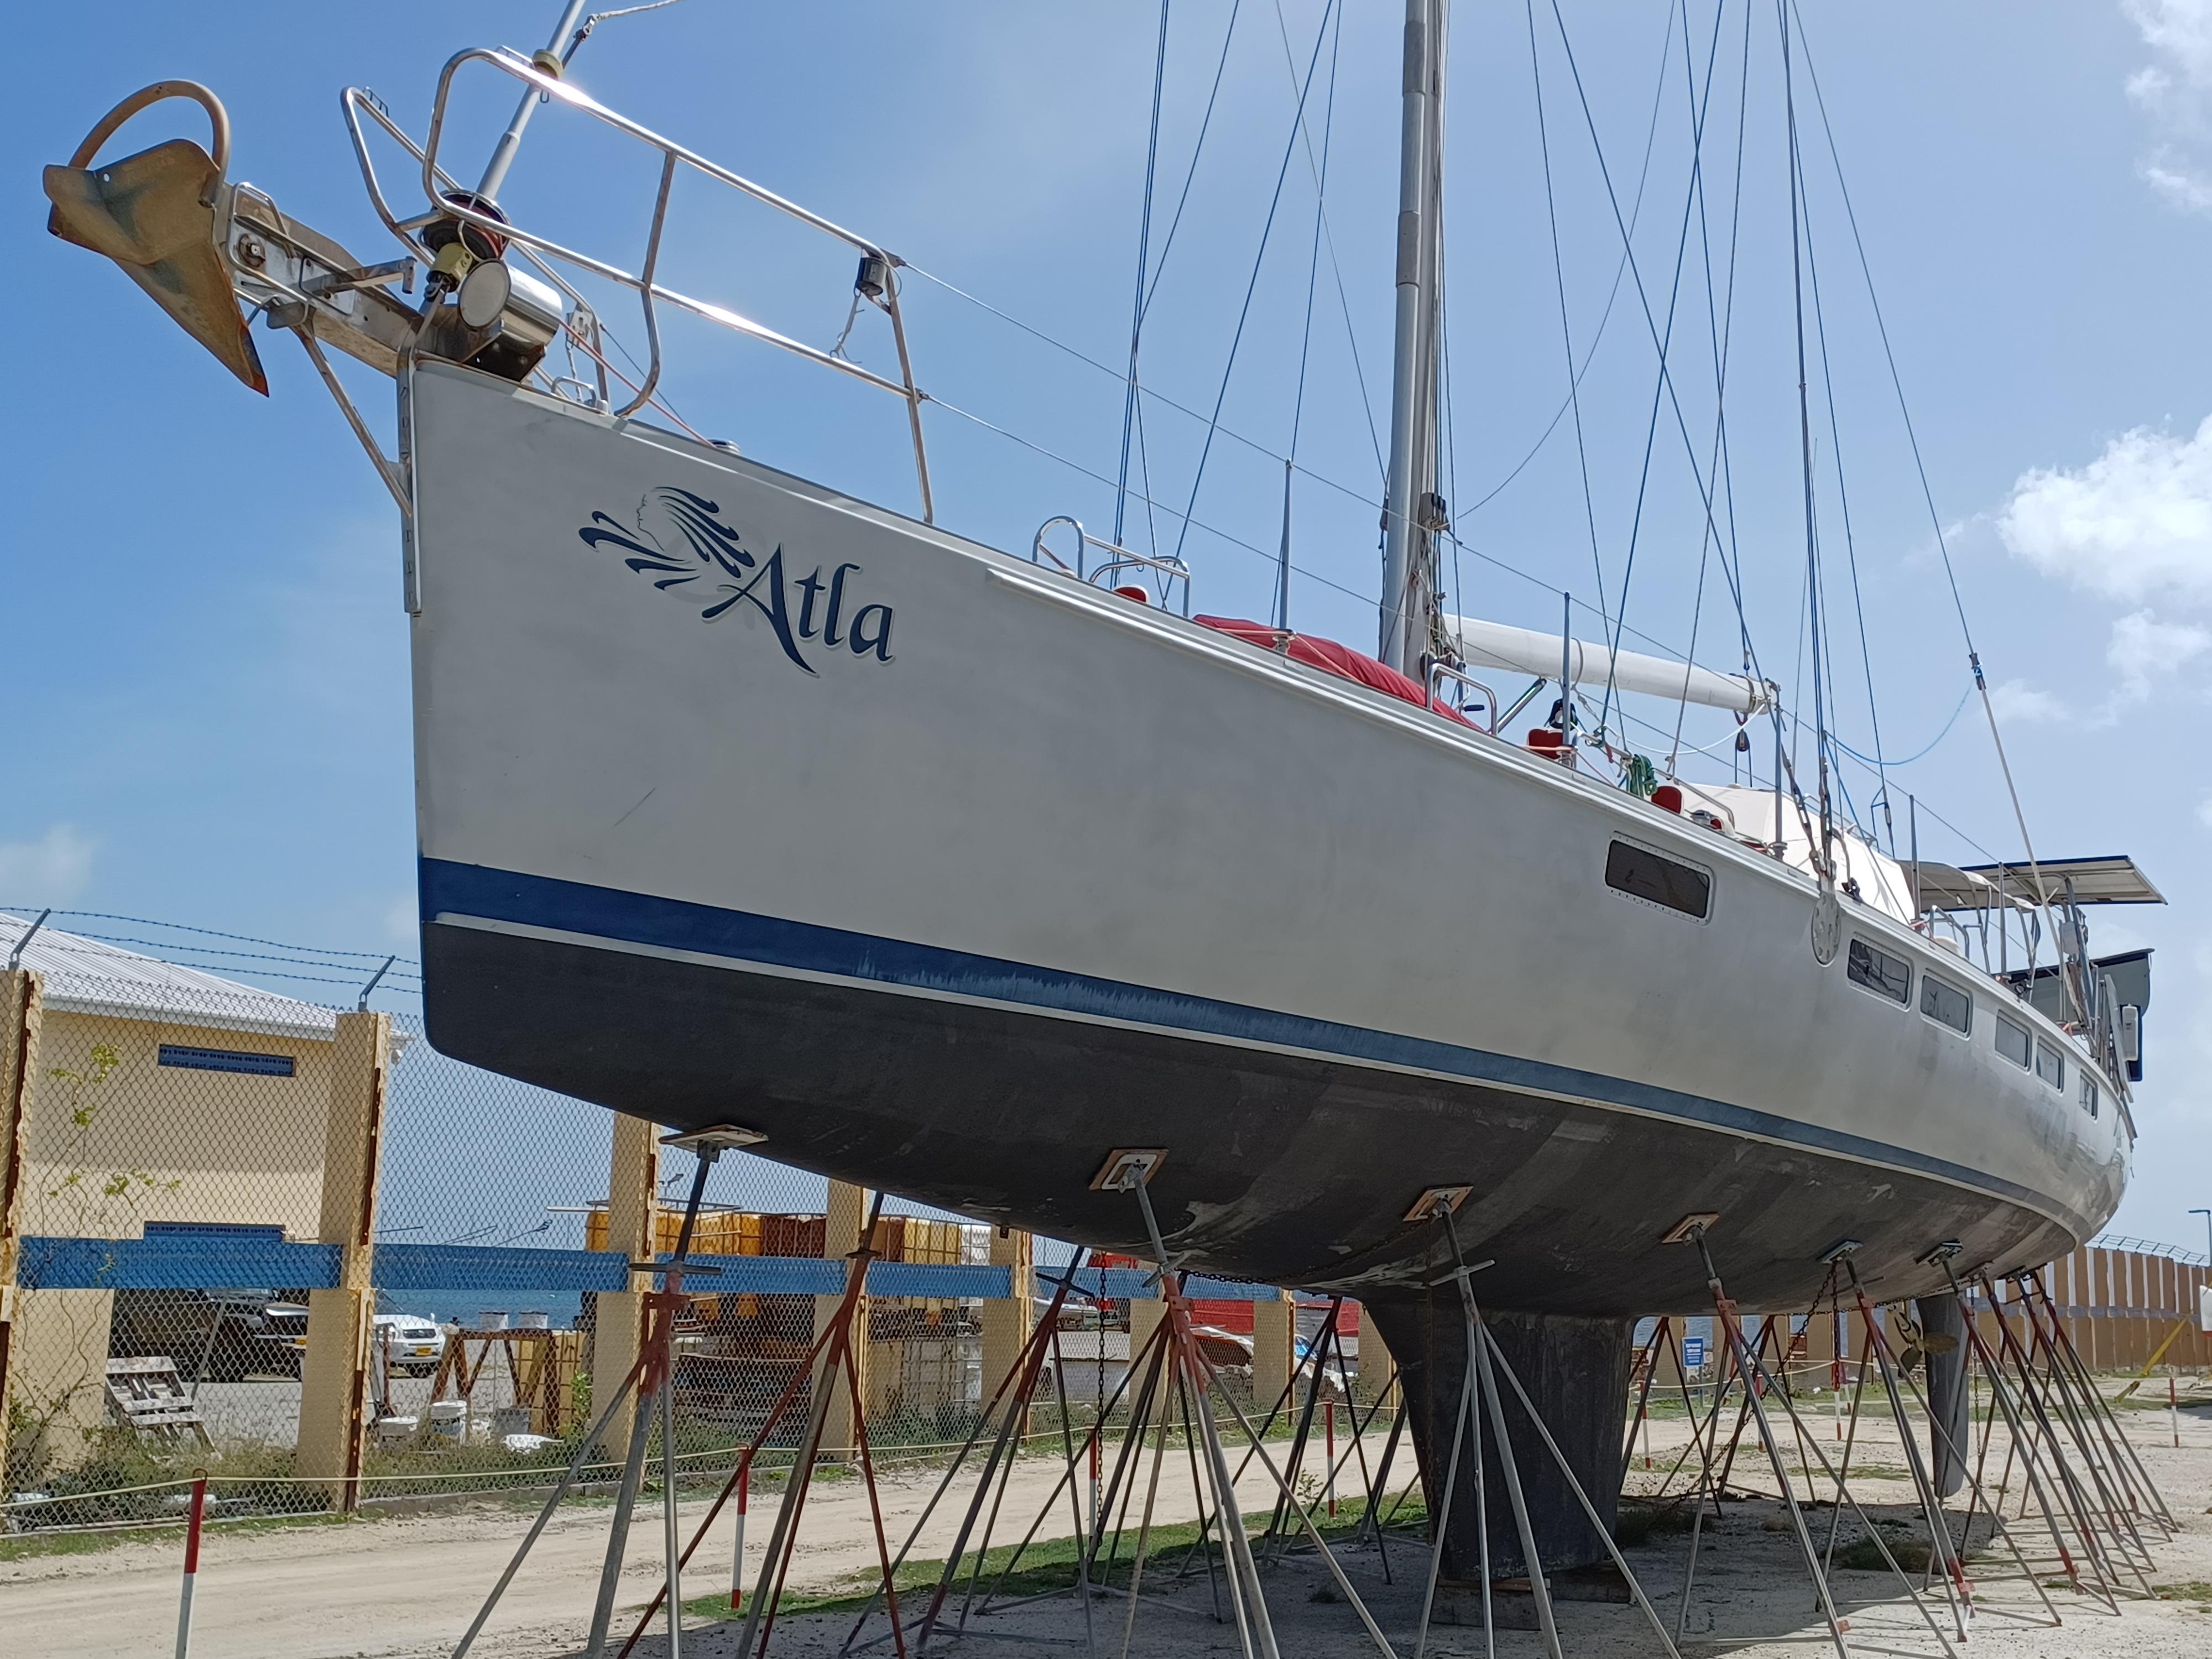 sundeer yacht for sale